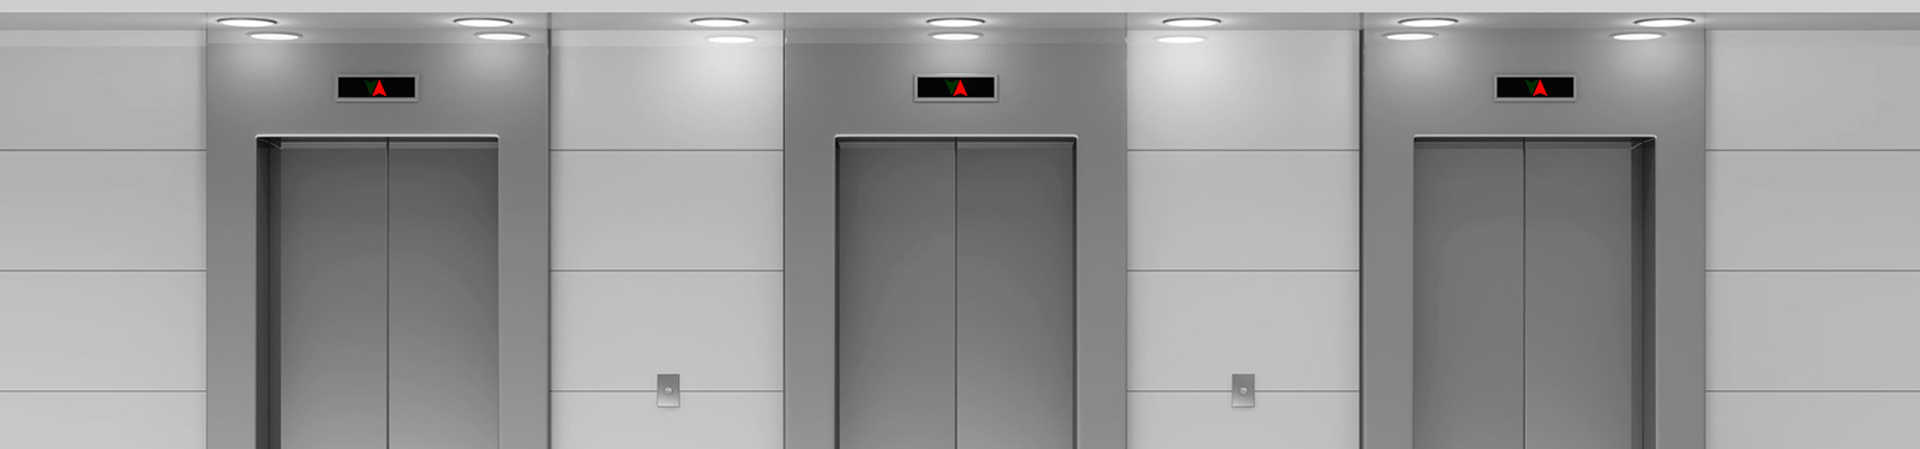 Instalación de ascensor